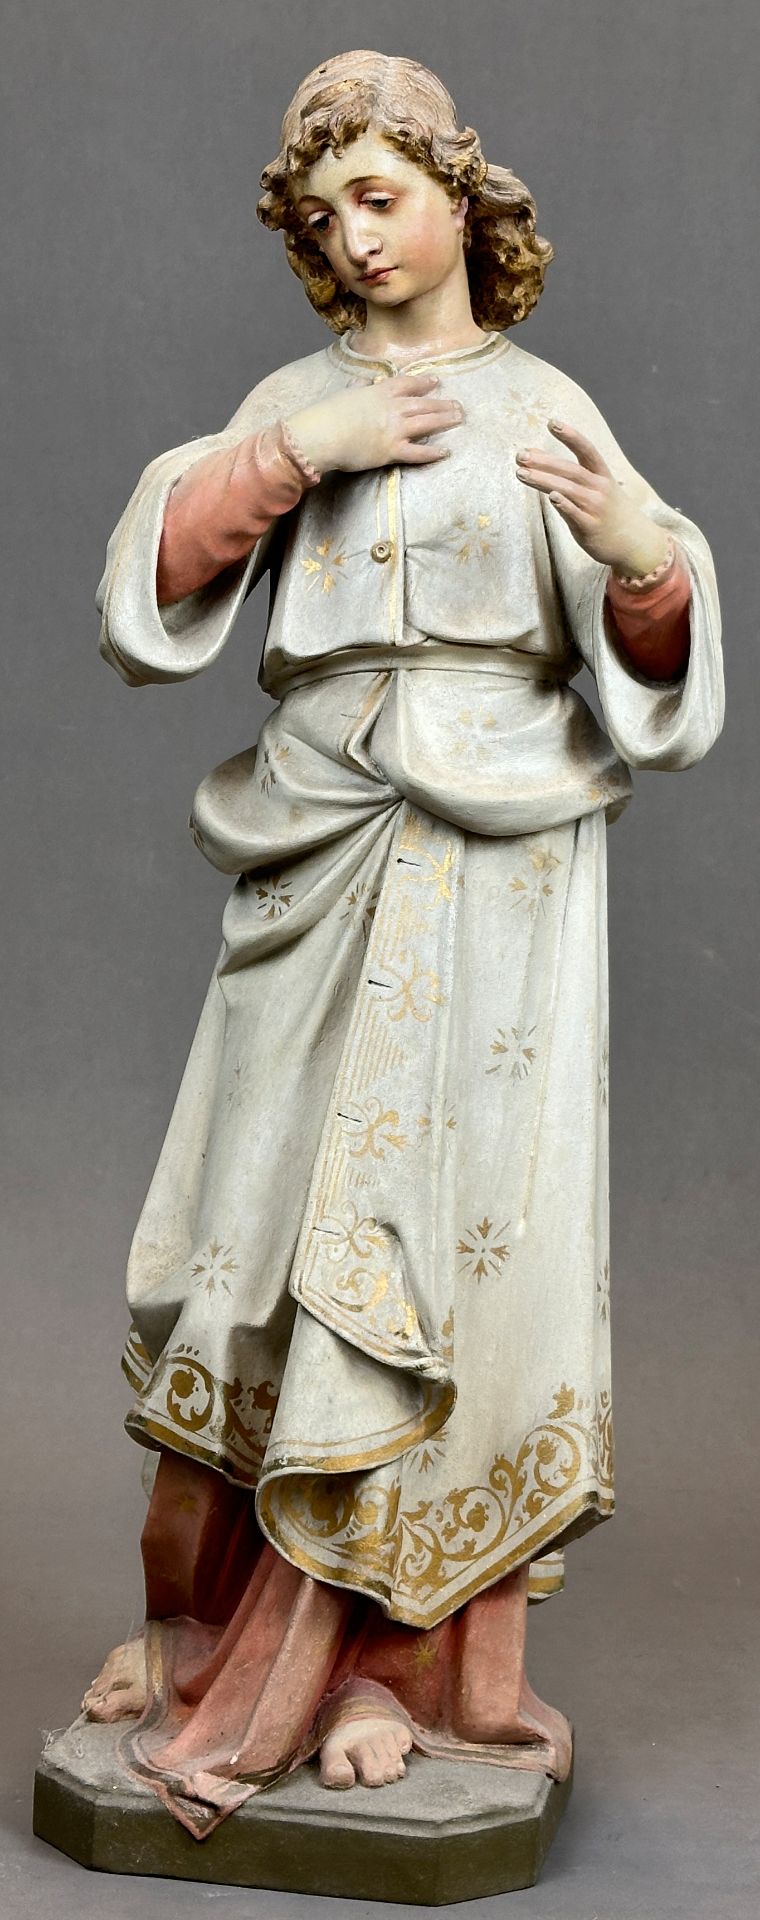 Heiligenfigur. Nazarener. 19. Jahrhundert. Deutschland.